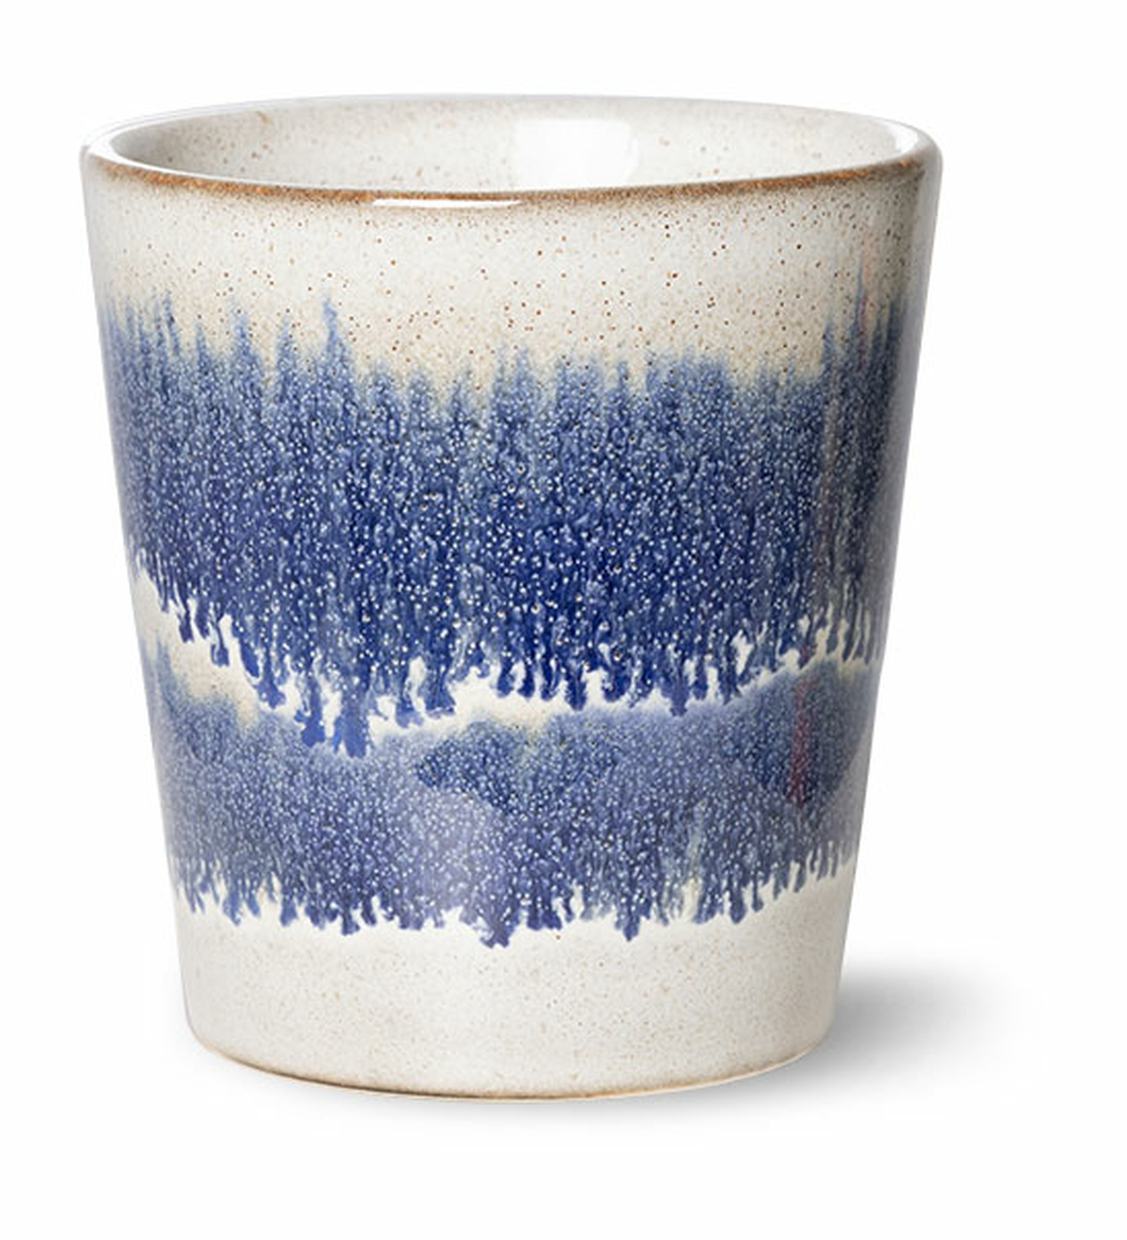 70s ceramics: coffee mug, cosmos